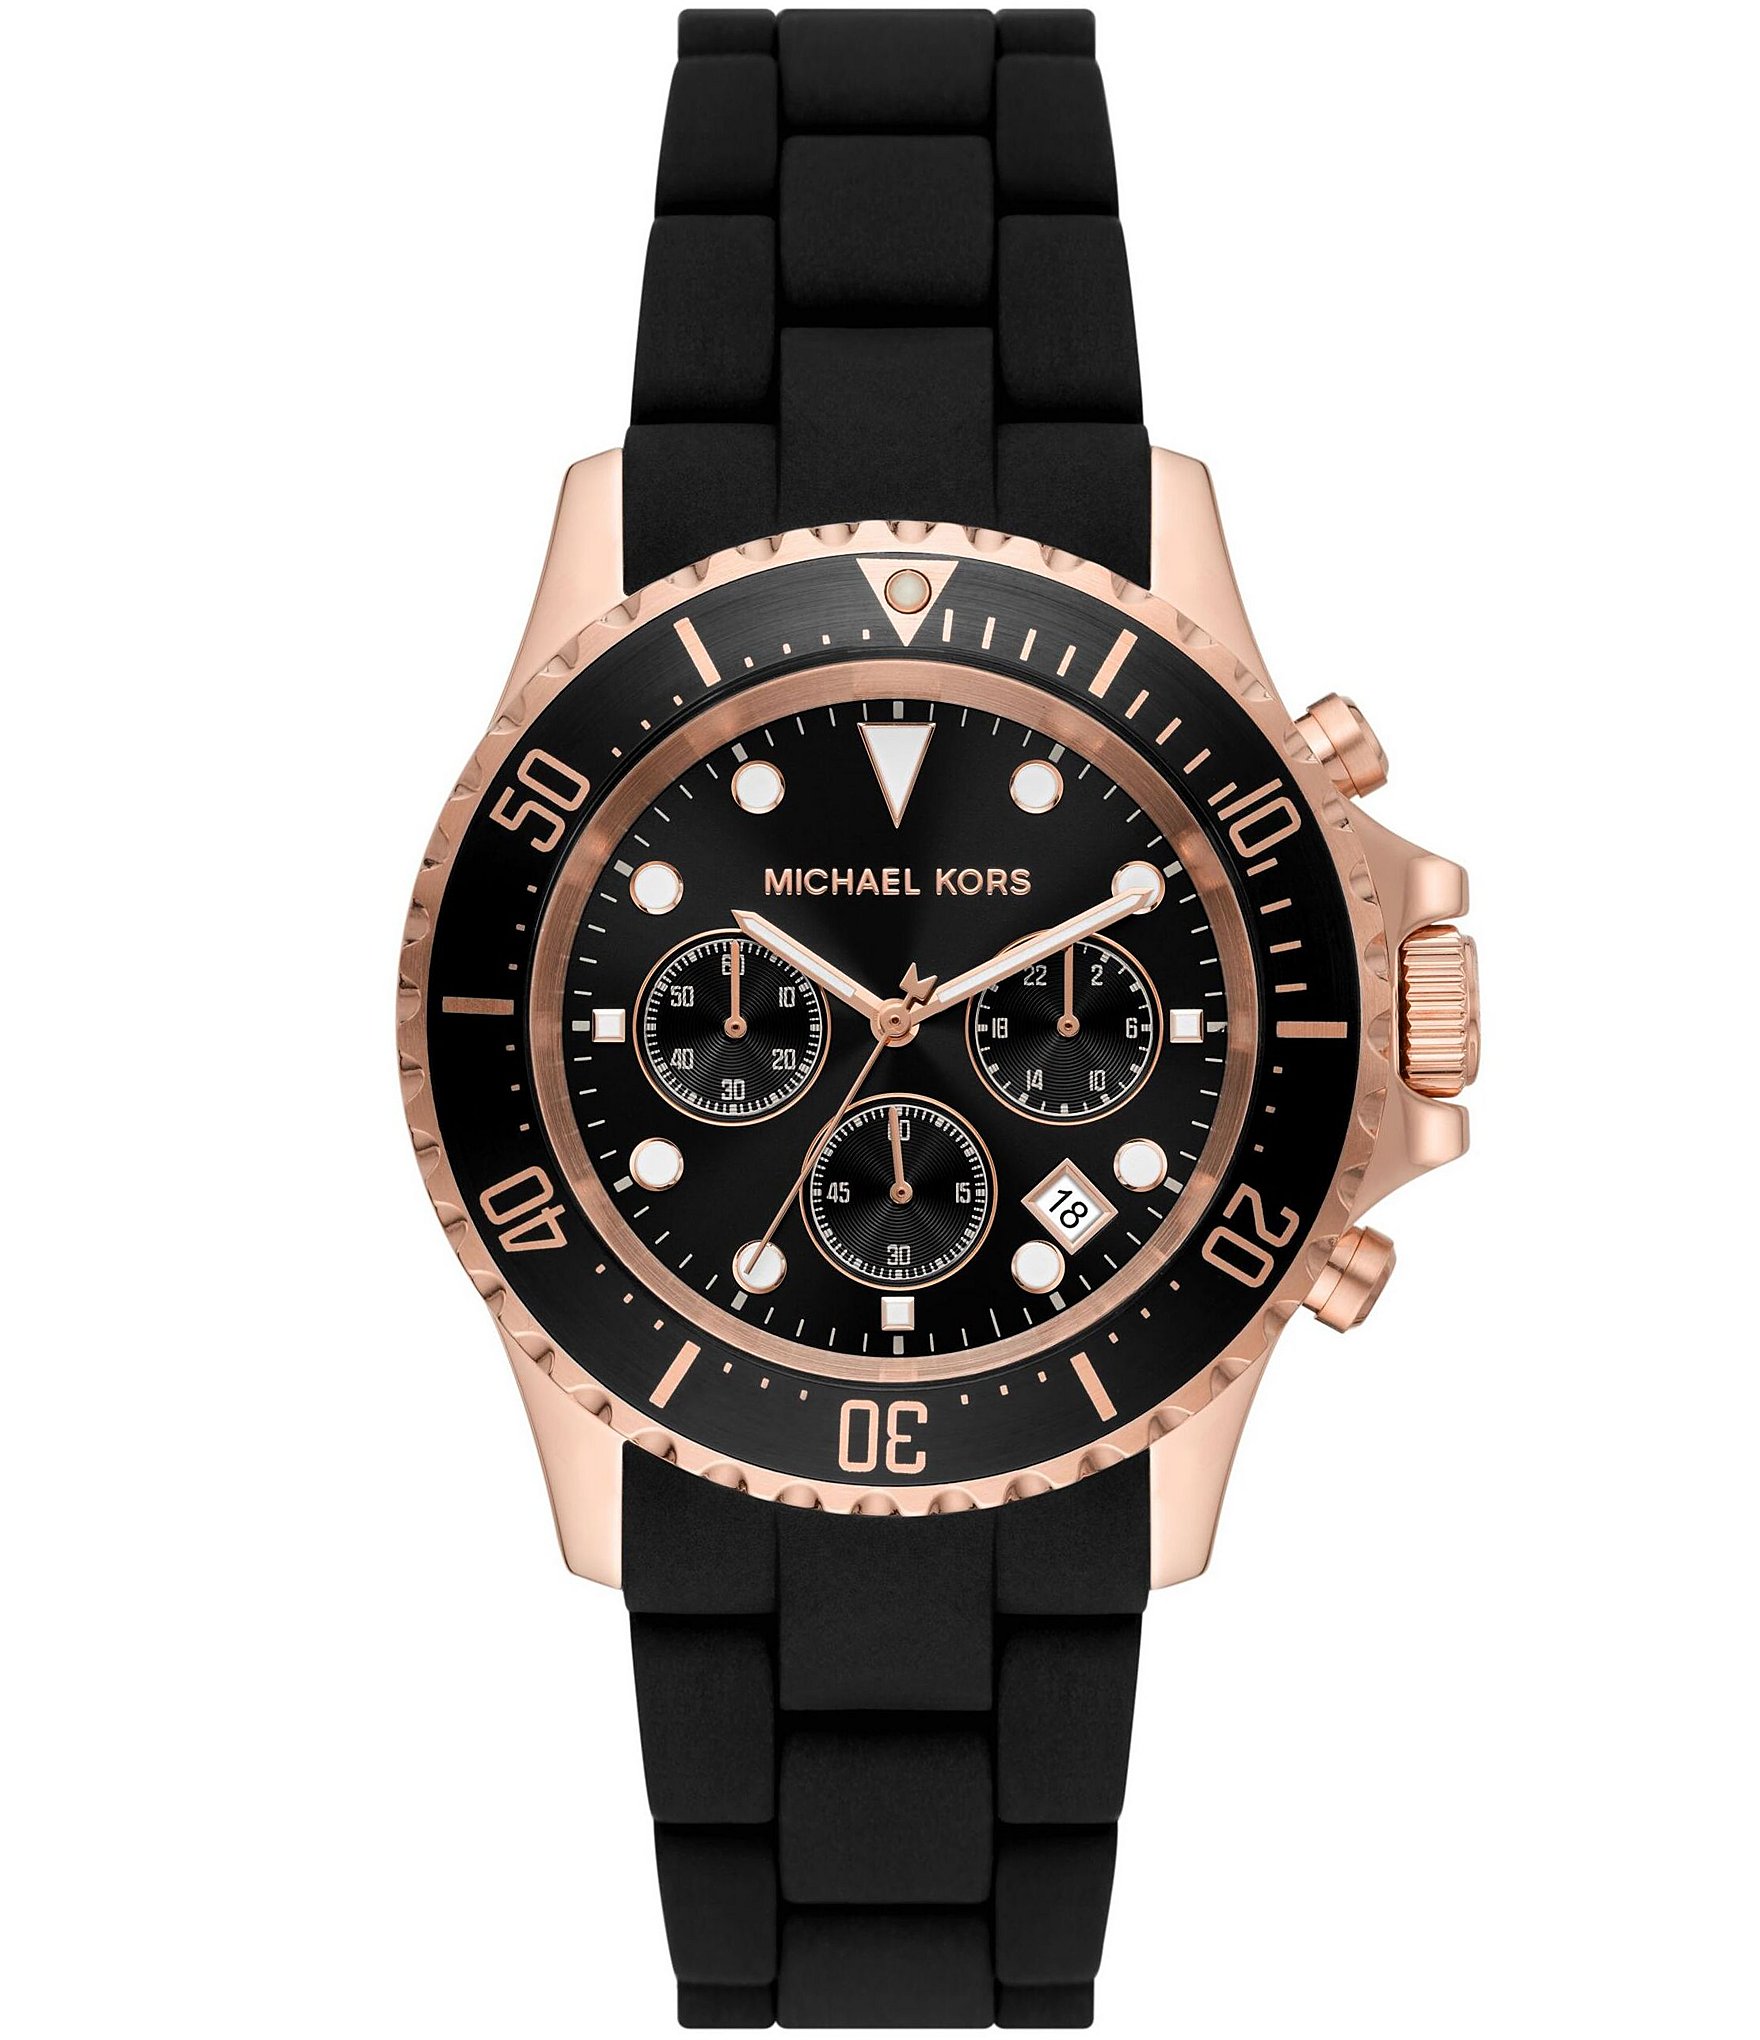 michael kors rose gold watch: Men's Watches | Dillard's